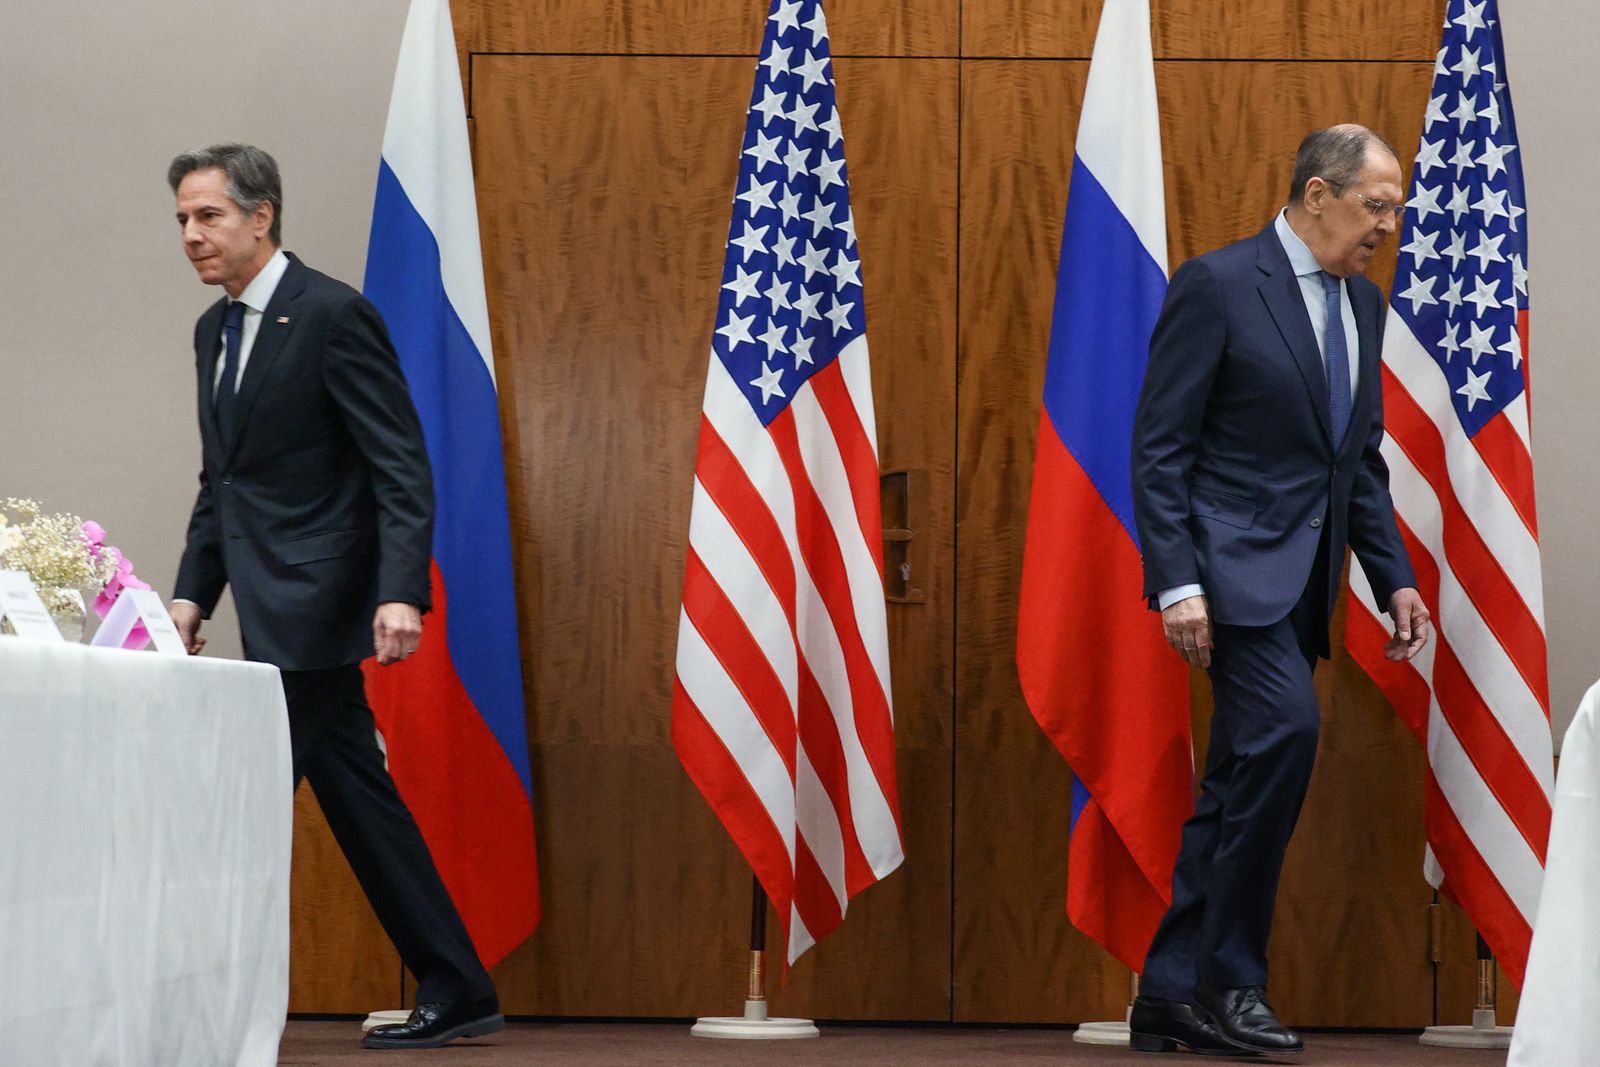 وزير الخارجية الأميركي أنتوني بلينكن ونظيره الروسي سيرجي لافروف ينتقلان إلى مقعديهما قبل اجتماعهما في جنيف، سويسرا- 21 يناير 2022. - via REUTERS